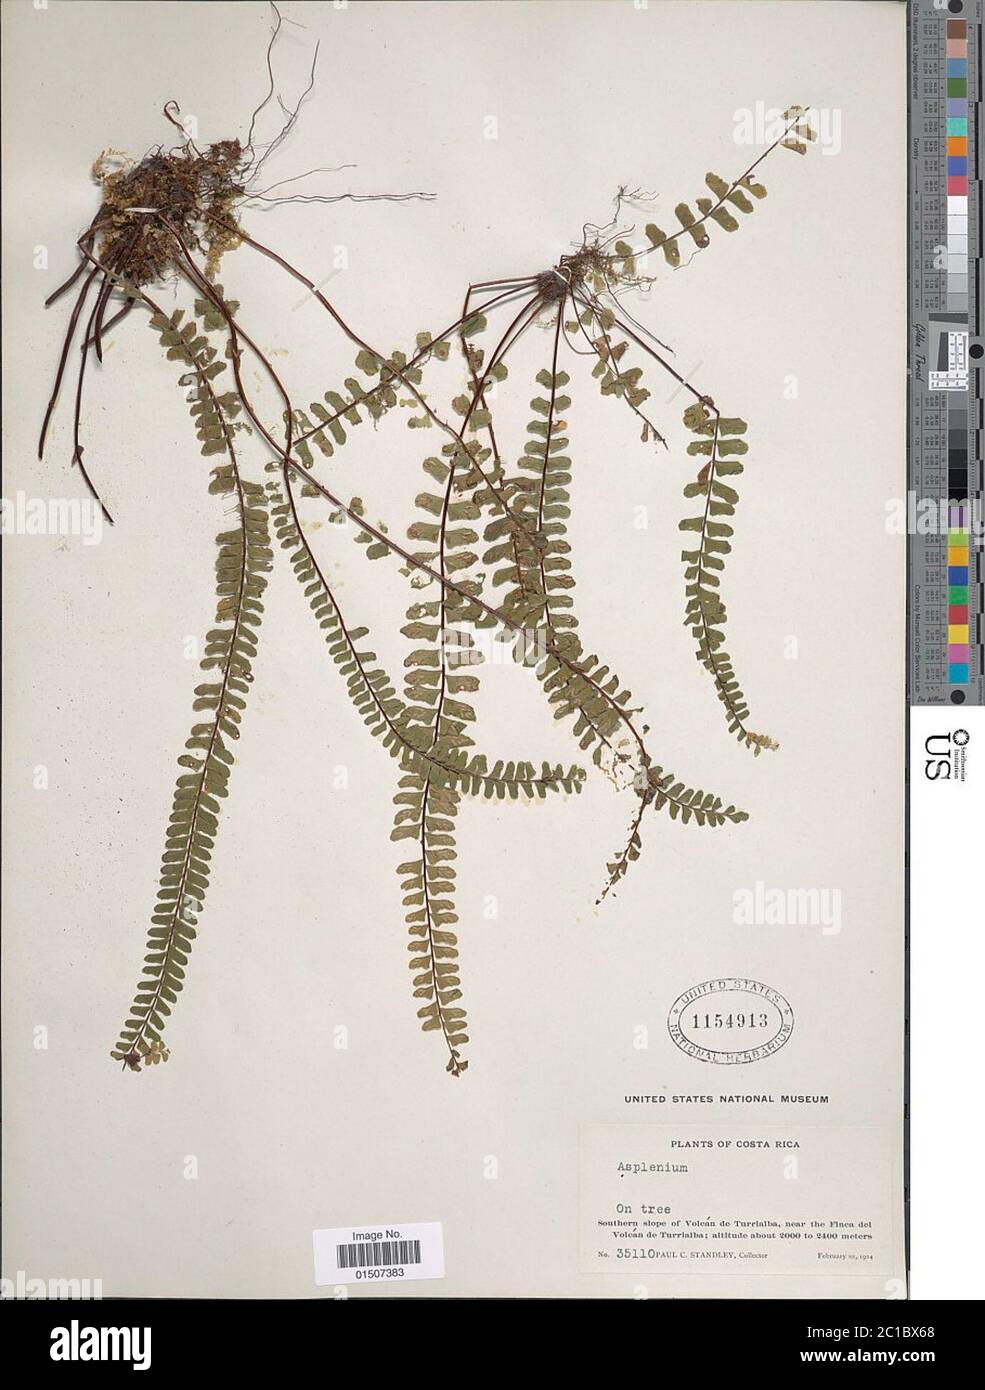 Asplenium polyphyllum Bertol Asplenium polyphyllum Bertol. Stock Photo